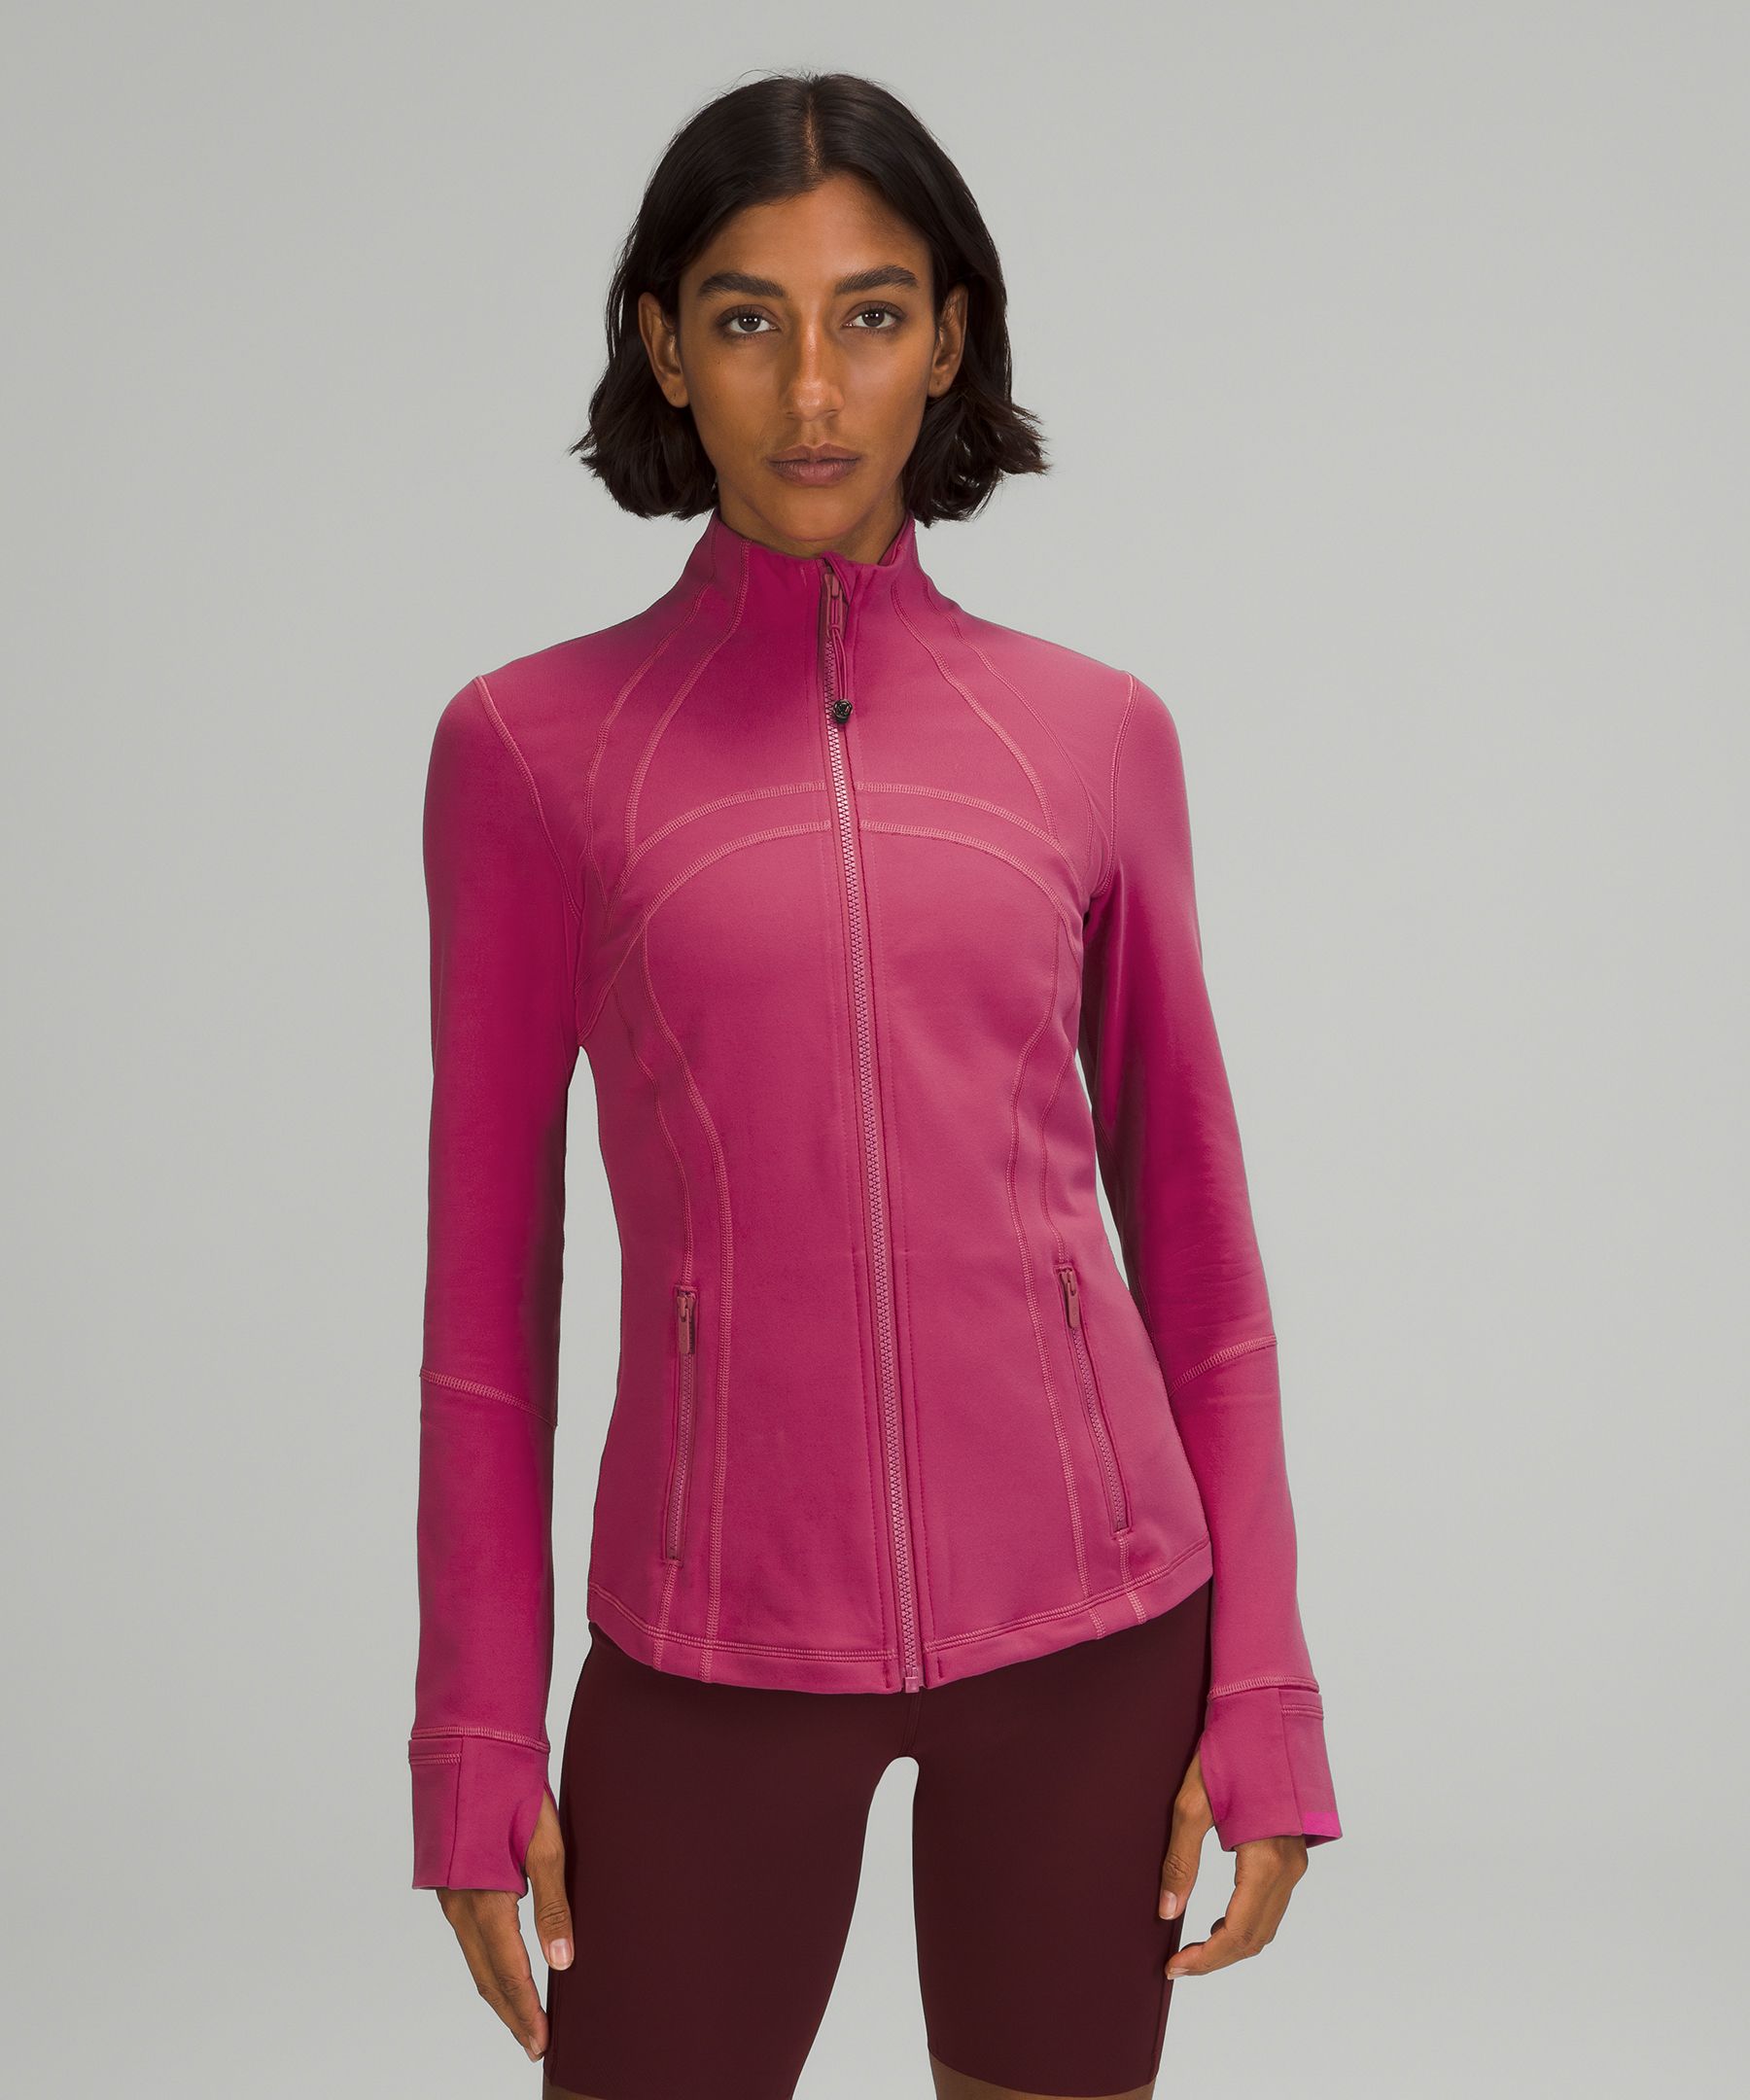 Lululemon Define Jacket Luon In Pink Lychee